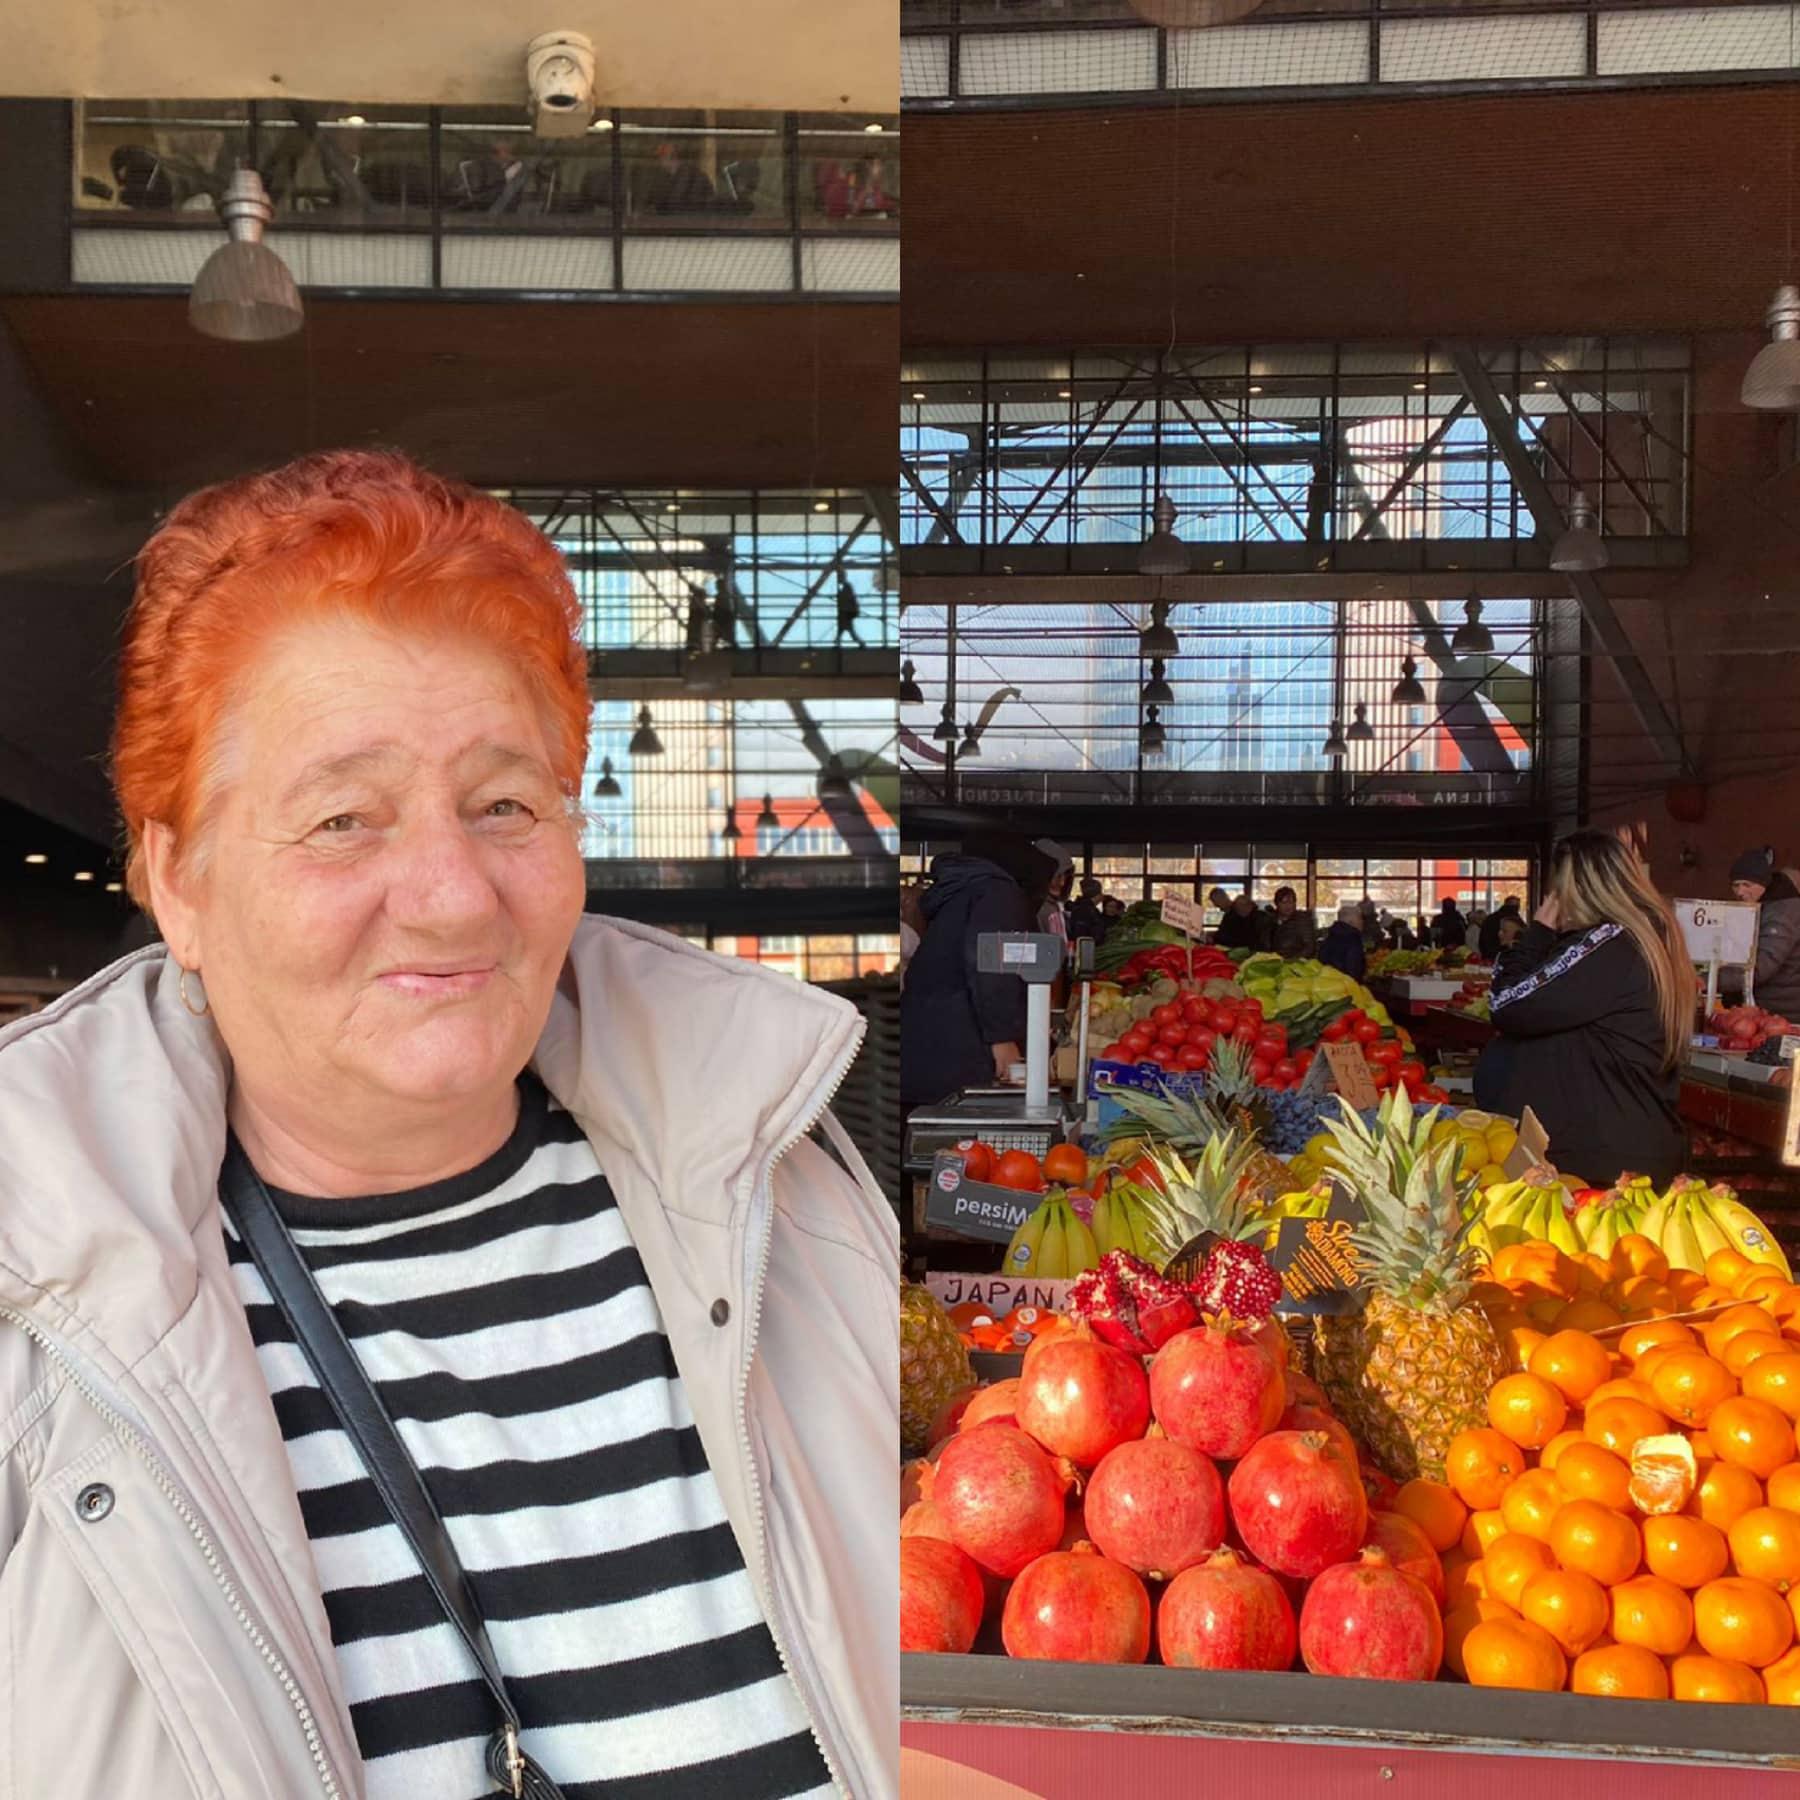 Penzionerka Zilka Avdić: Dala sam 20 KM, jedva dva ručka mogu da se naprave